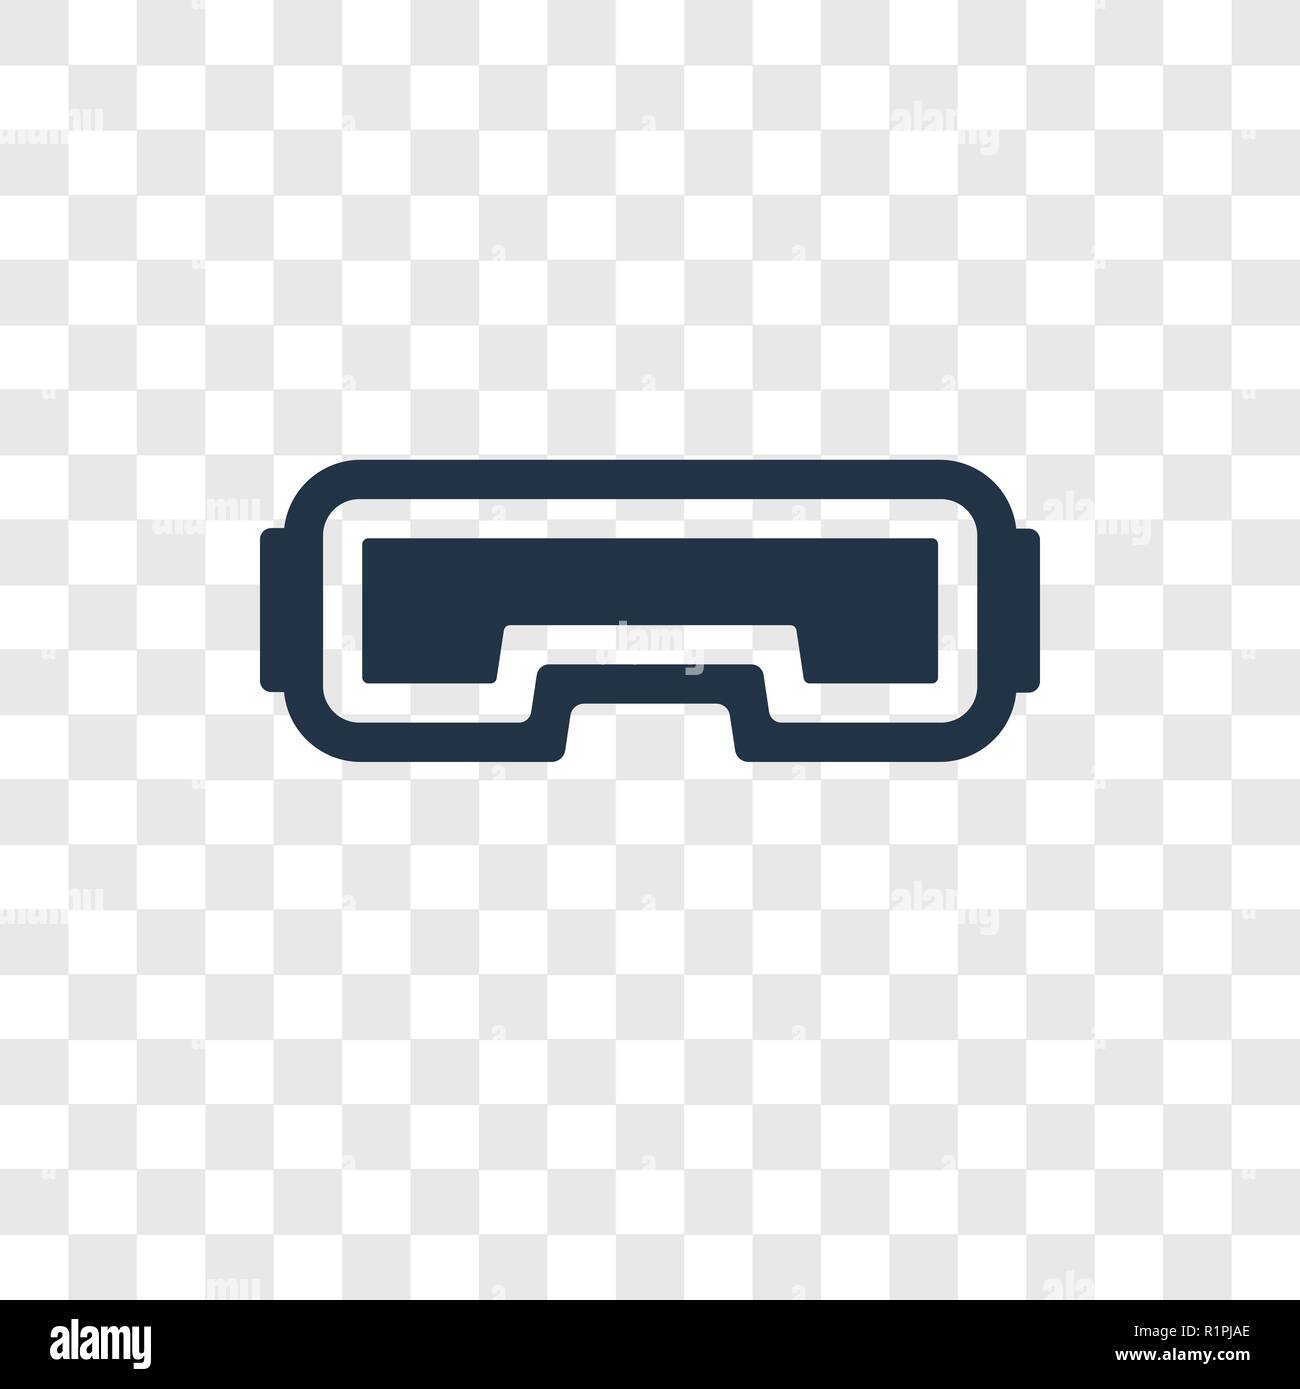 Vr-Brille vektor Icon auf transparentem Hintergrund isoliert, VR-Brille Transparenz logo Konzept Stock Vektor